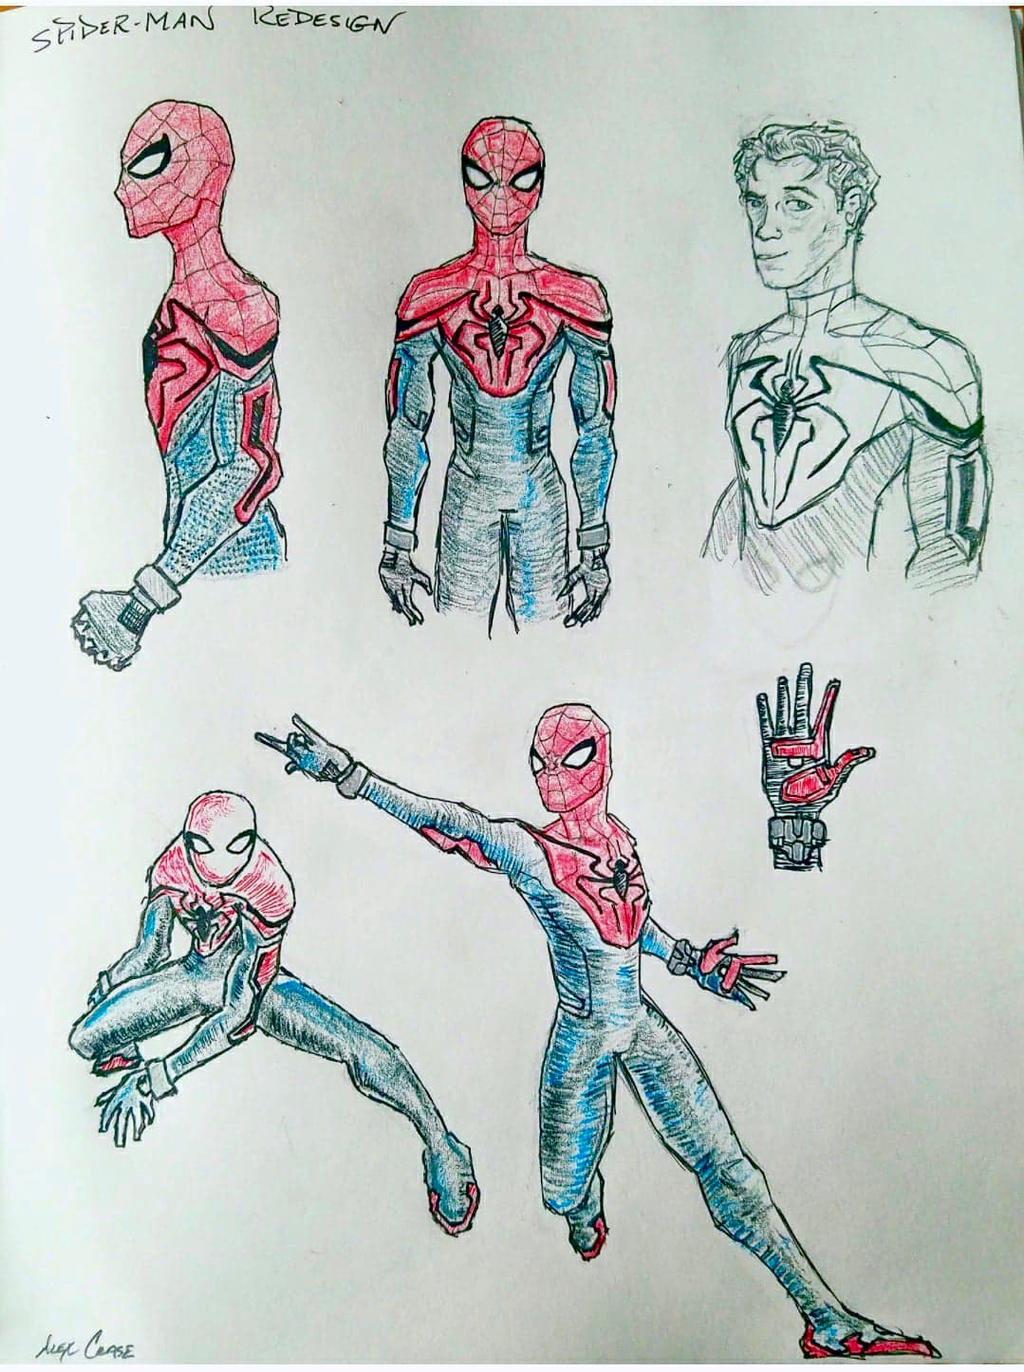 Spider-Man Concept by climbguy on DeviantArt